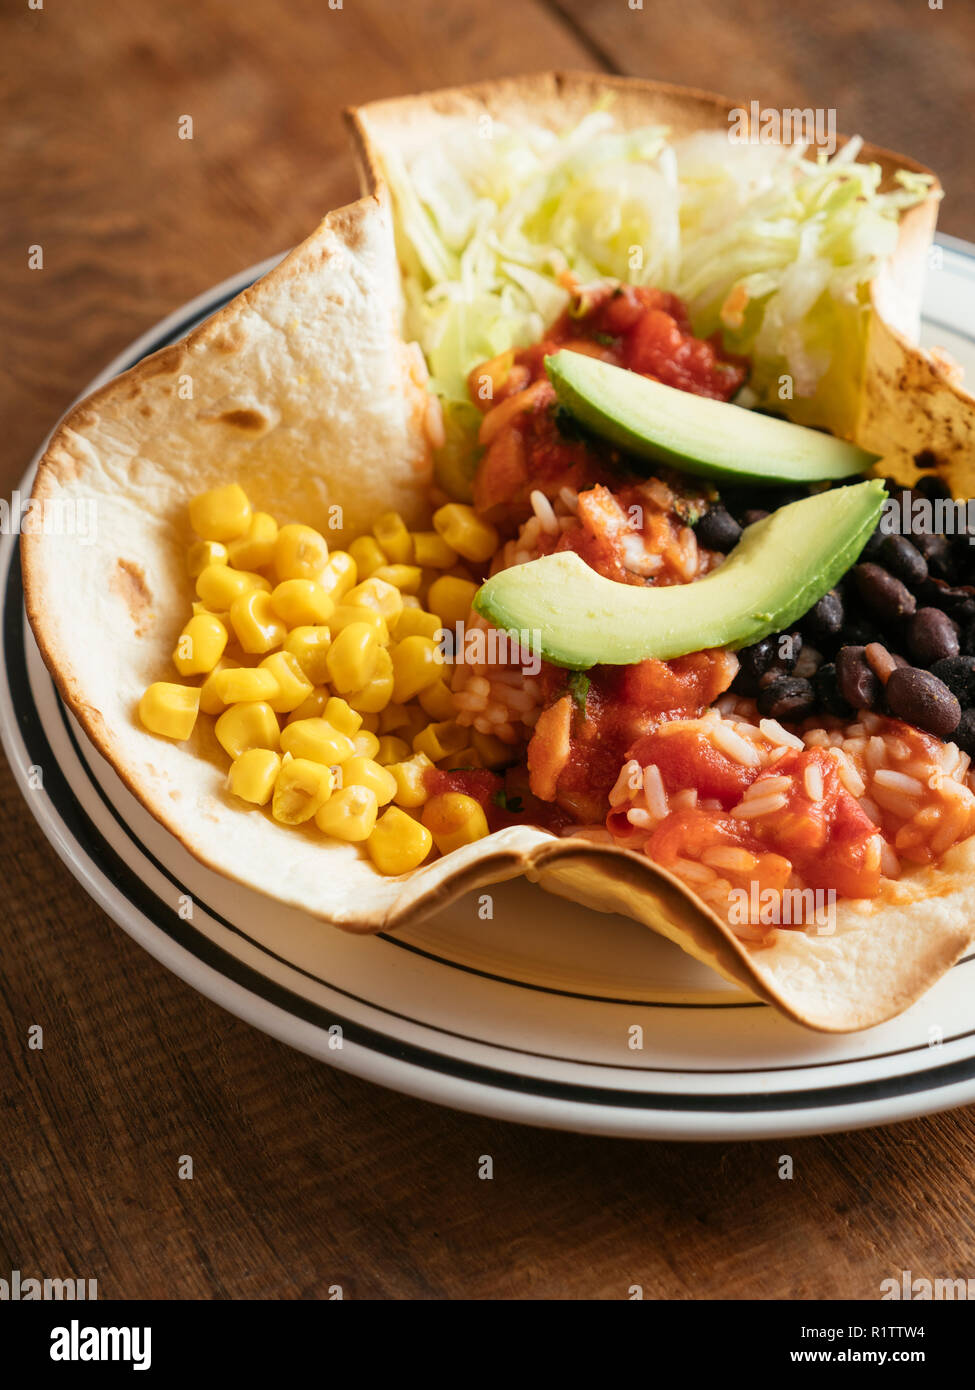 Mexican taco ciotola con lattuga, mais, piccante messicana, pomodoro riso, fagioli neri, salsa e avocado su una tortilla di farina. Foto Stock